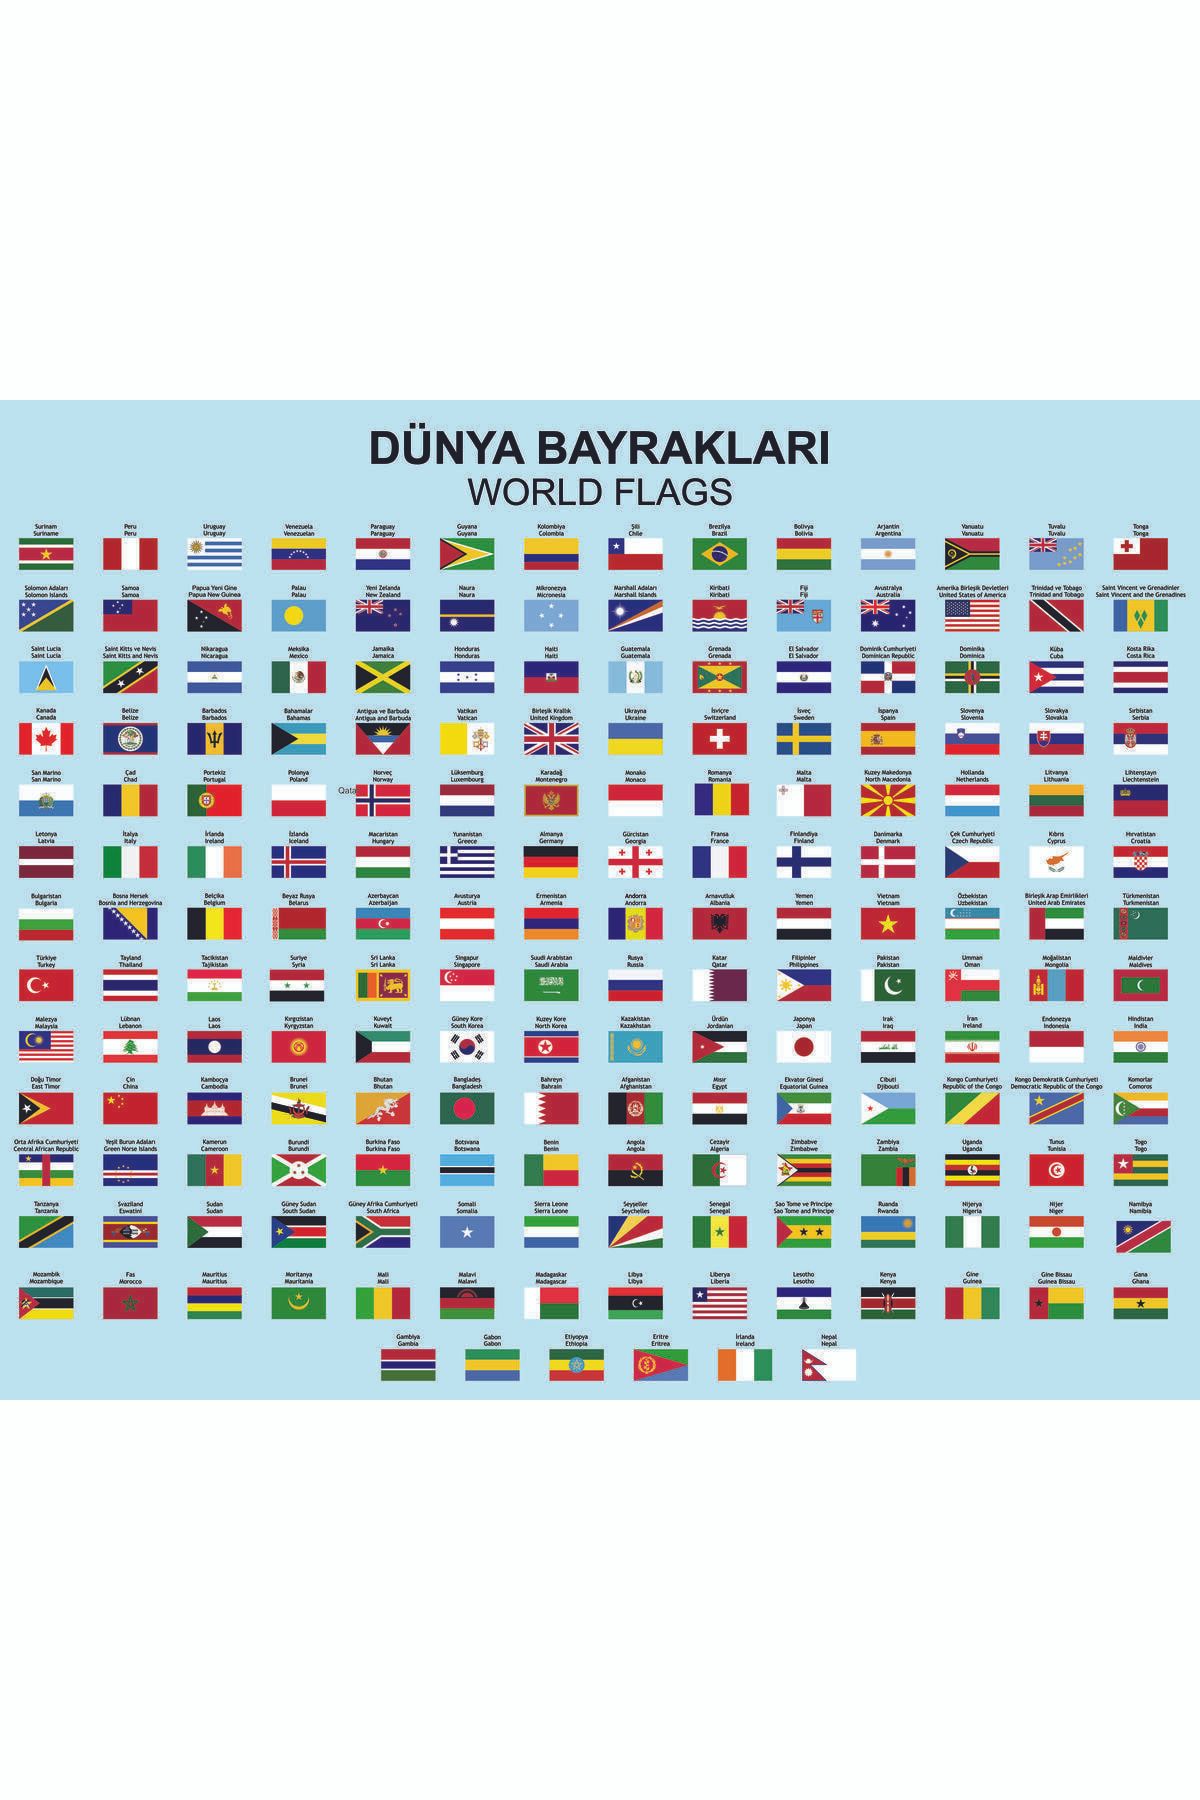 Master Dünya Bayrakları 188 Ülke Sticker (85 X 70cm)